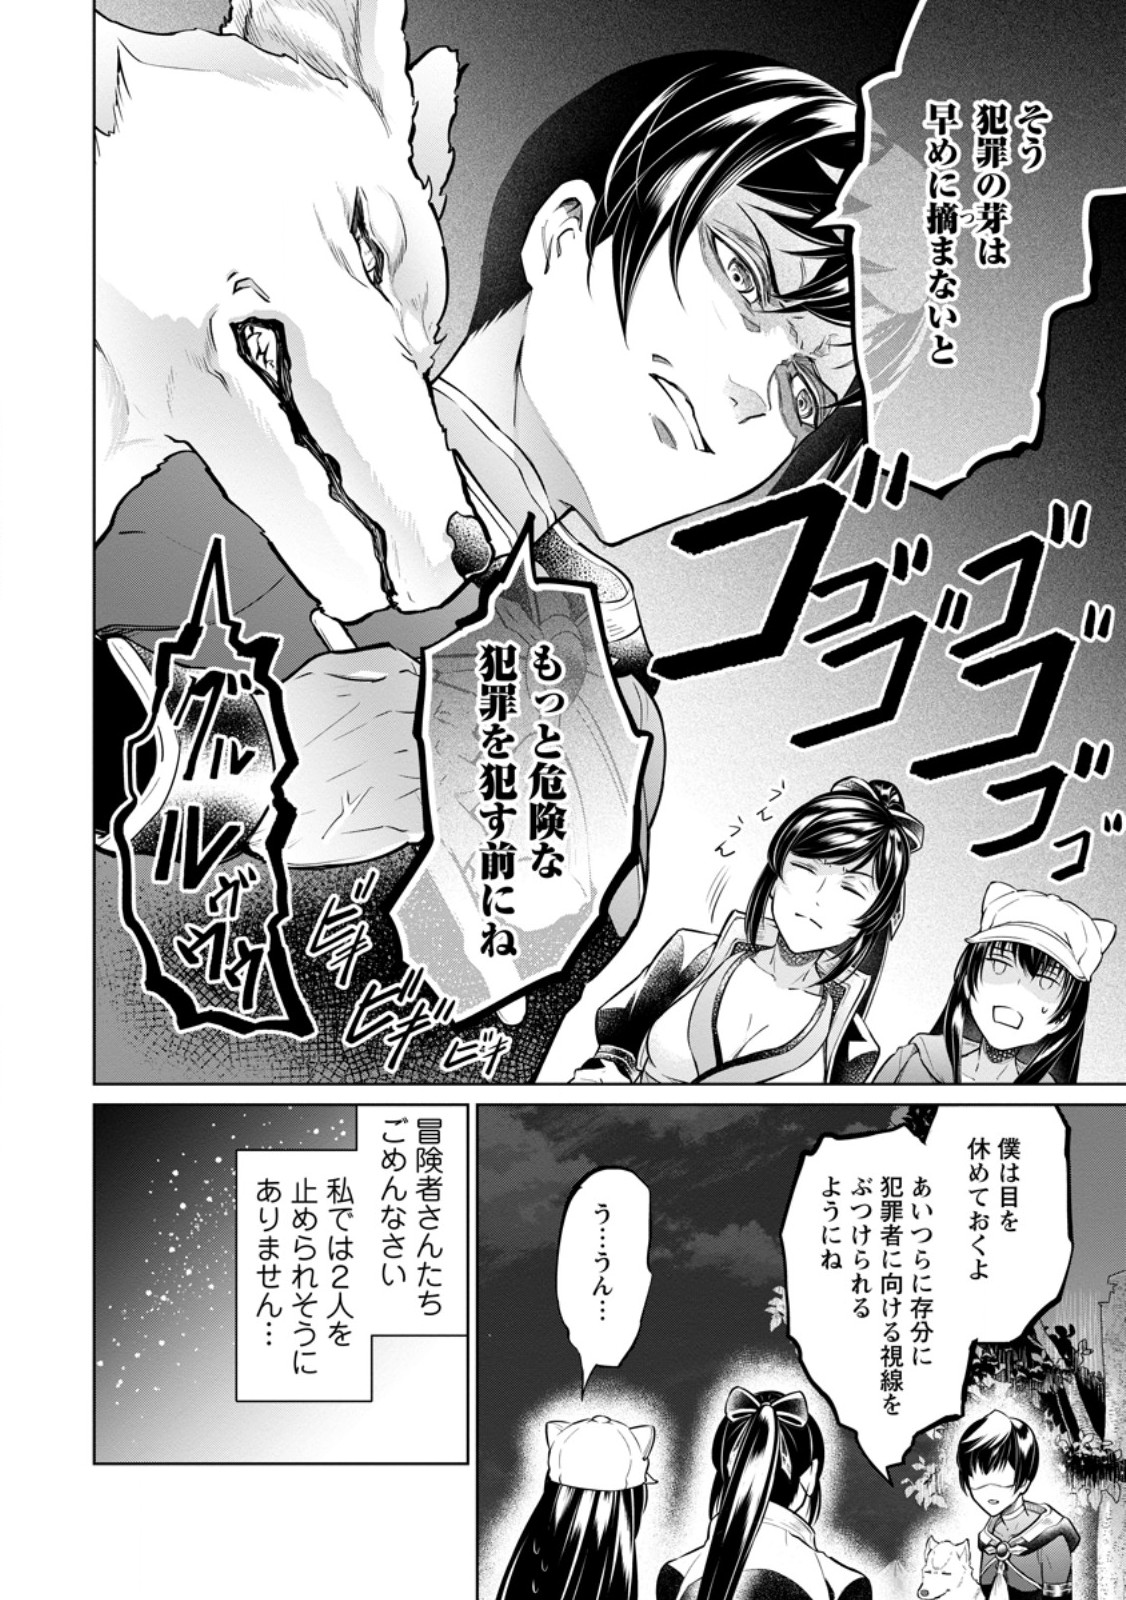 Damasare Uragirare Shokei Sareta Watashi Ga…… Dare wo Shinjirareru To iu Nodesho (Manga) - Chapter 25.2 - Page 2